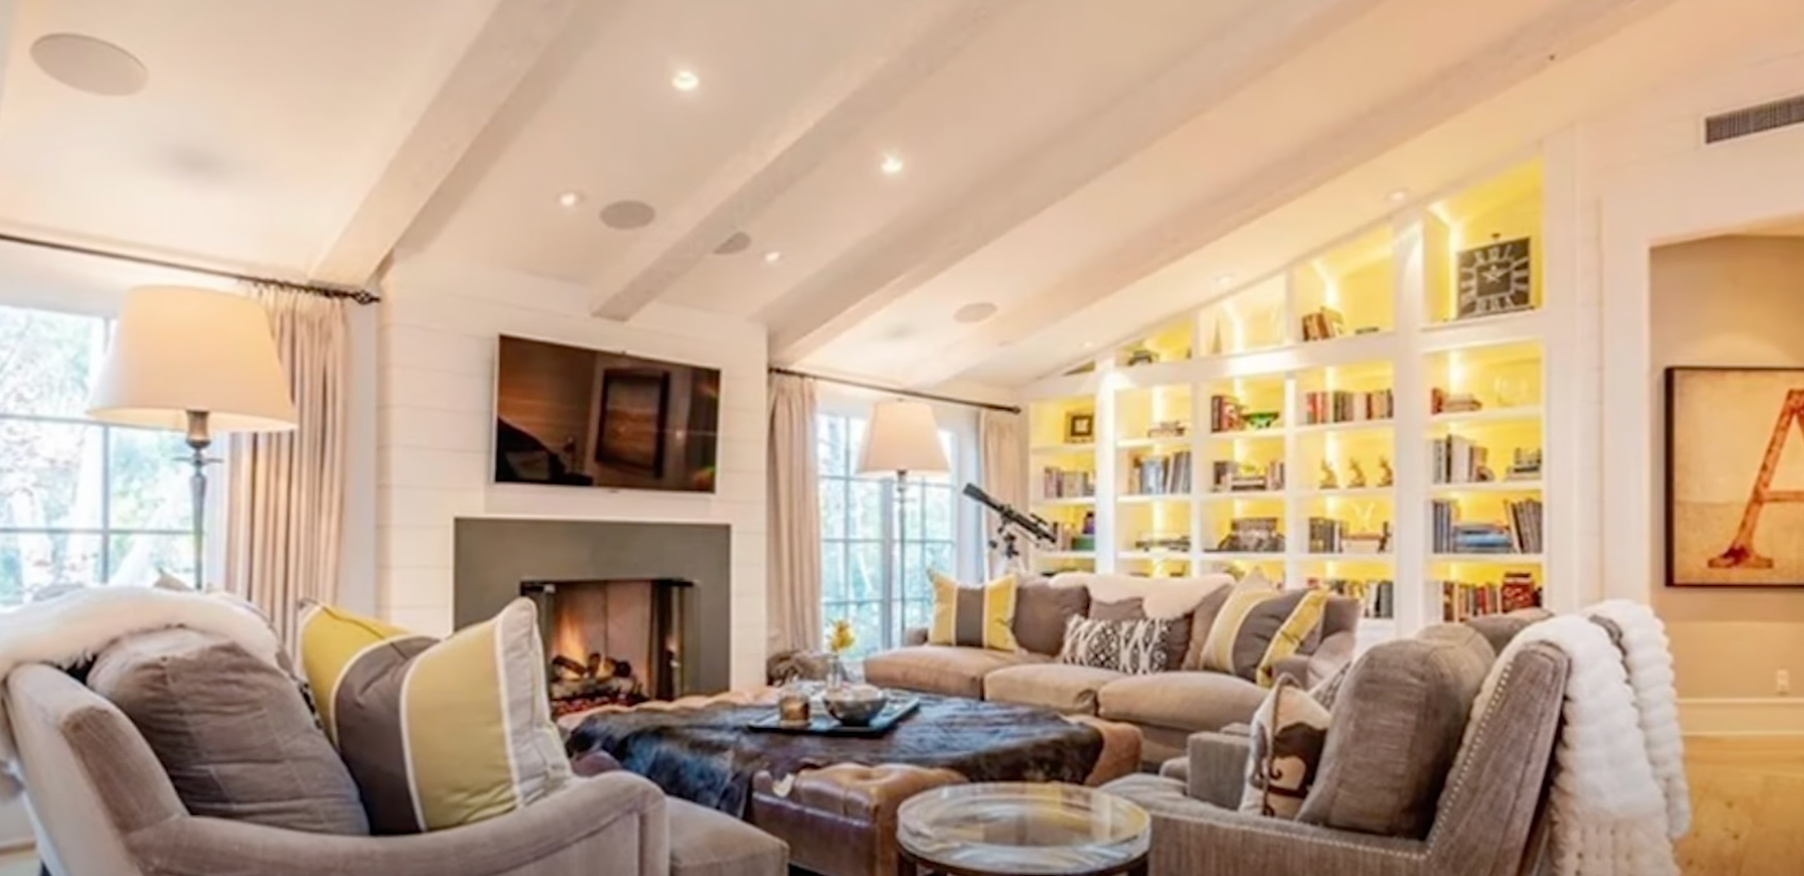 Le salon spacieux de John Stamos et Caitlin McHugh dans leur maison de Los Angeles | Source : YouTube@FamousEntertainment